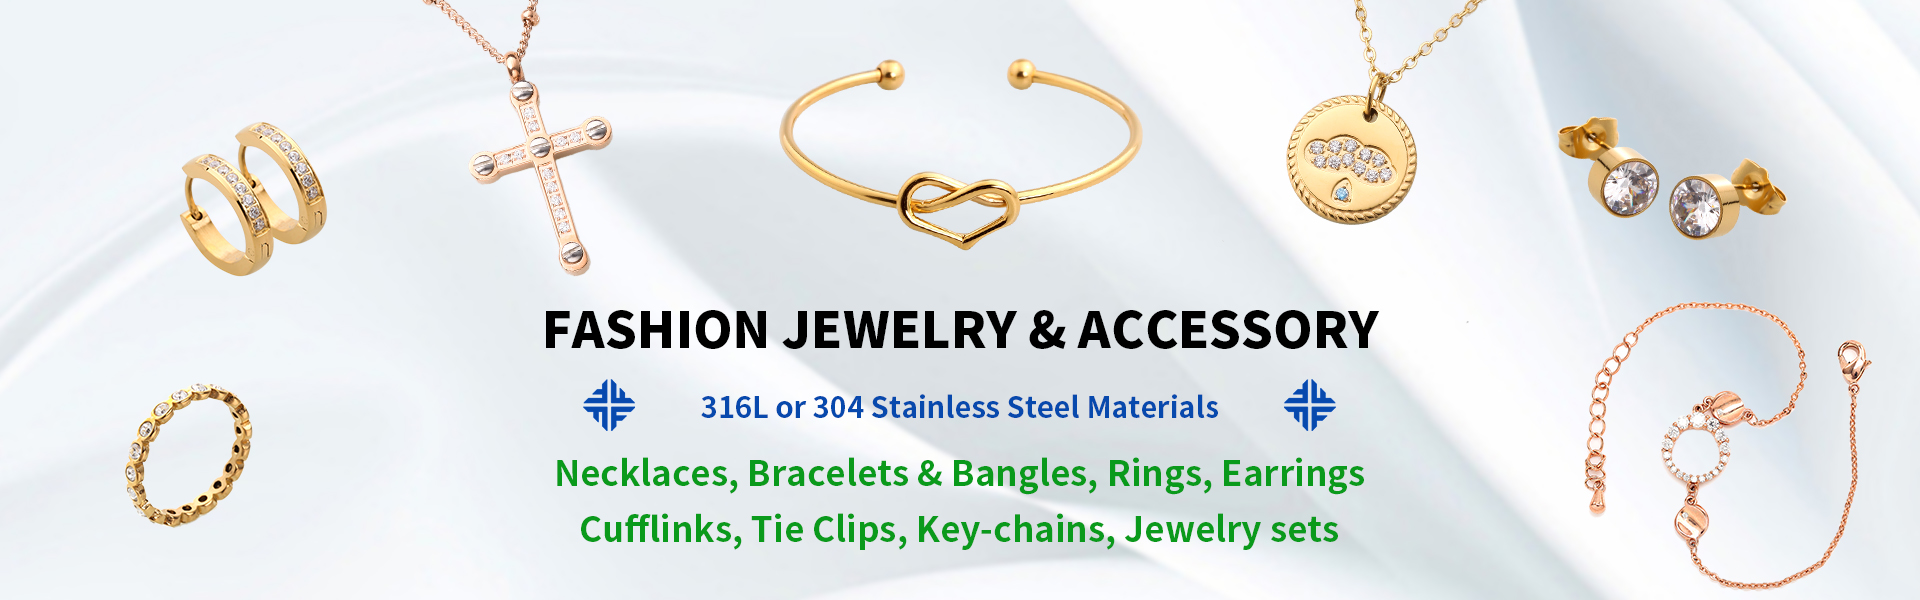 스테인레스 스틸 보석, 패션 보석 및 액세서리, 보석 도매 및 제조업체,Dongguan Fullten Jewelry Co., Ltd